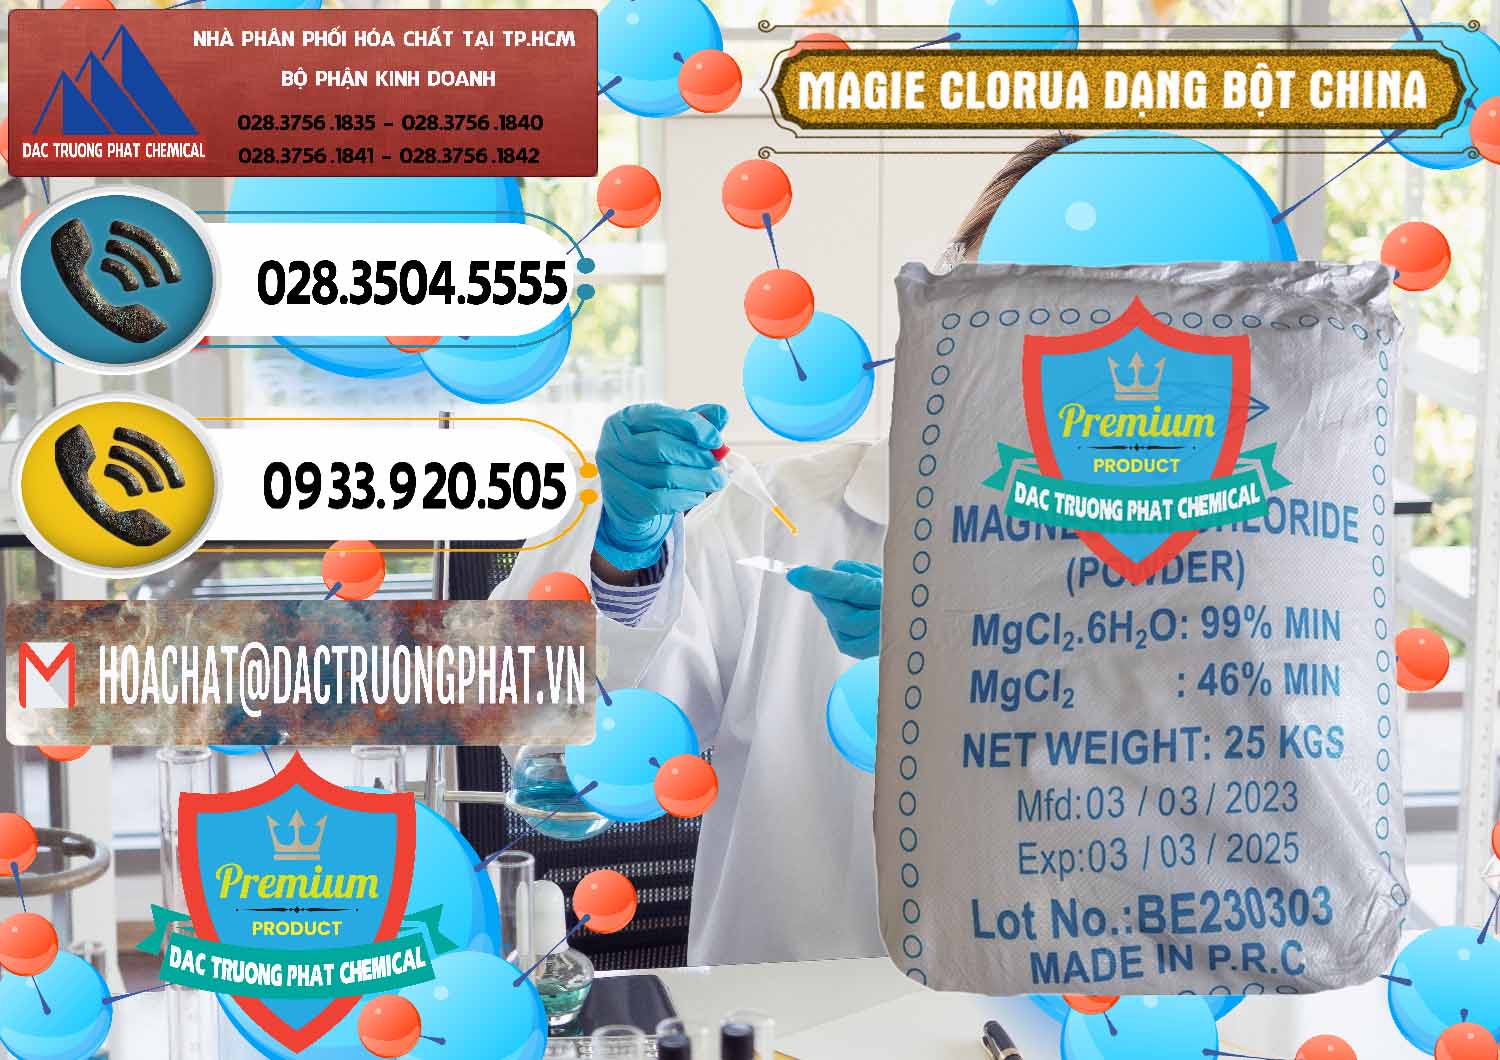 Chuyên cung ứng ( bán ) Magie Clorua – MGCL2 96% Dạng Bột Logo Kim Cương Trung Quốc China - 0387 - Công ty cung cấp _ kinh doanh hóa chất tại TP.HCM - hoachatdetnhuom.vn